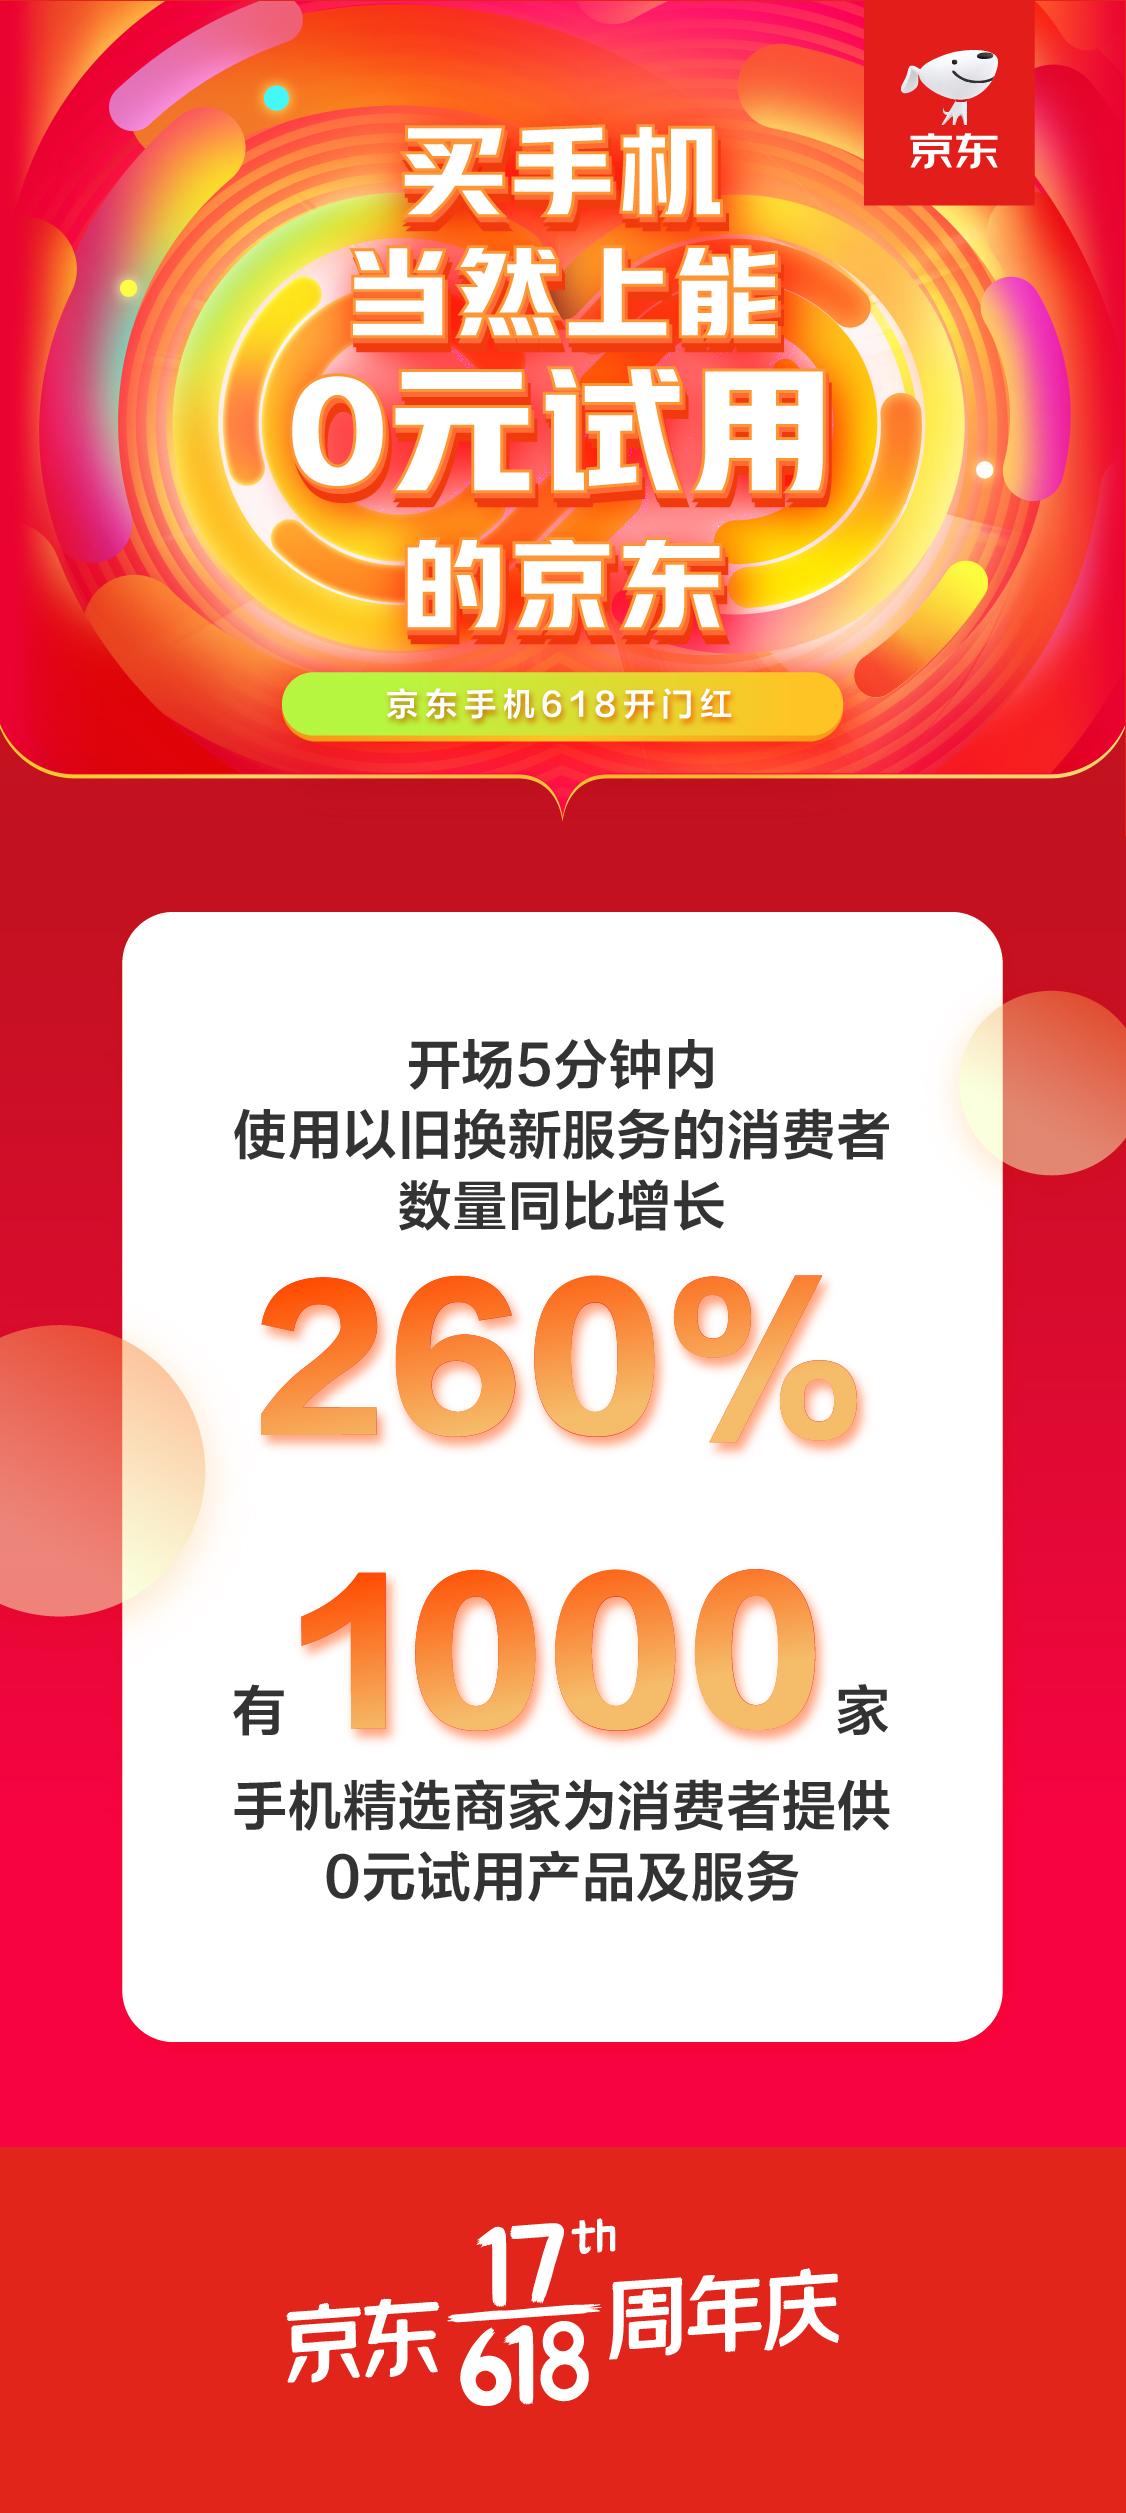 手机上新旧置换同比增长率260% 此次京东618服务项目备受青睐